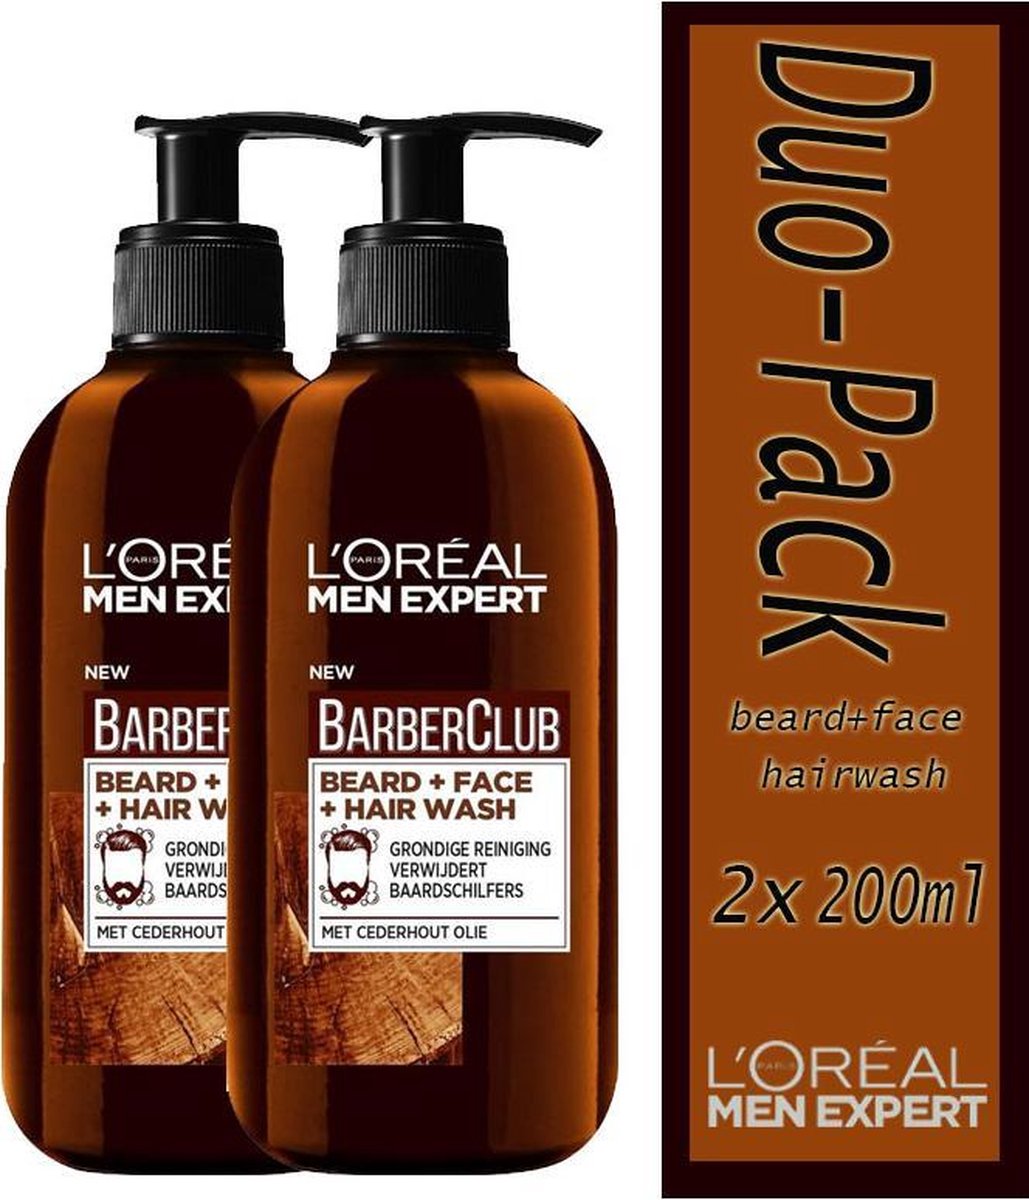 Duo-Pack: 2x L’Oréal Paris Men Expert BarberClub beard - 200 ml Verrijkt met cederhout olie voor een grondige reiniging en het verwijderen van baardschilfers